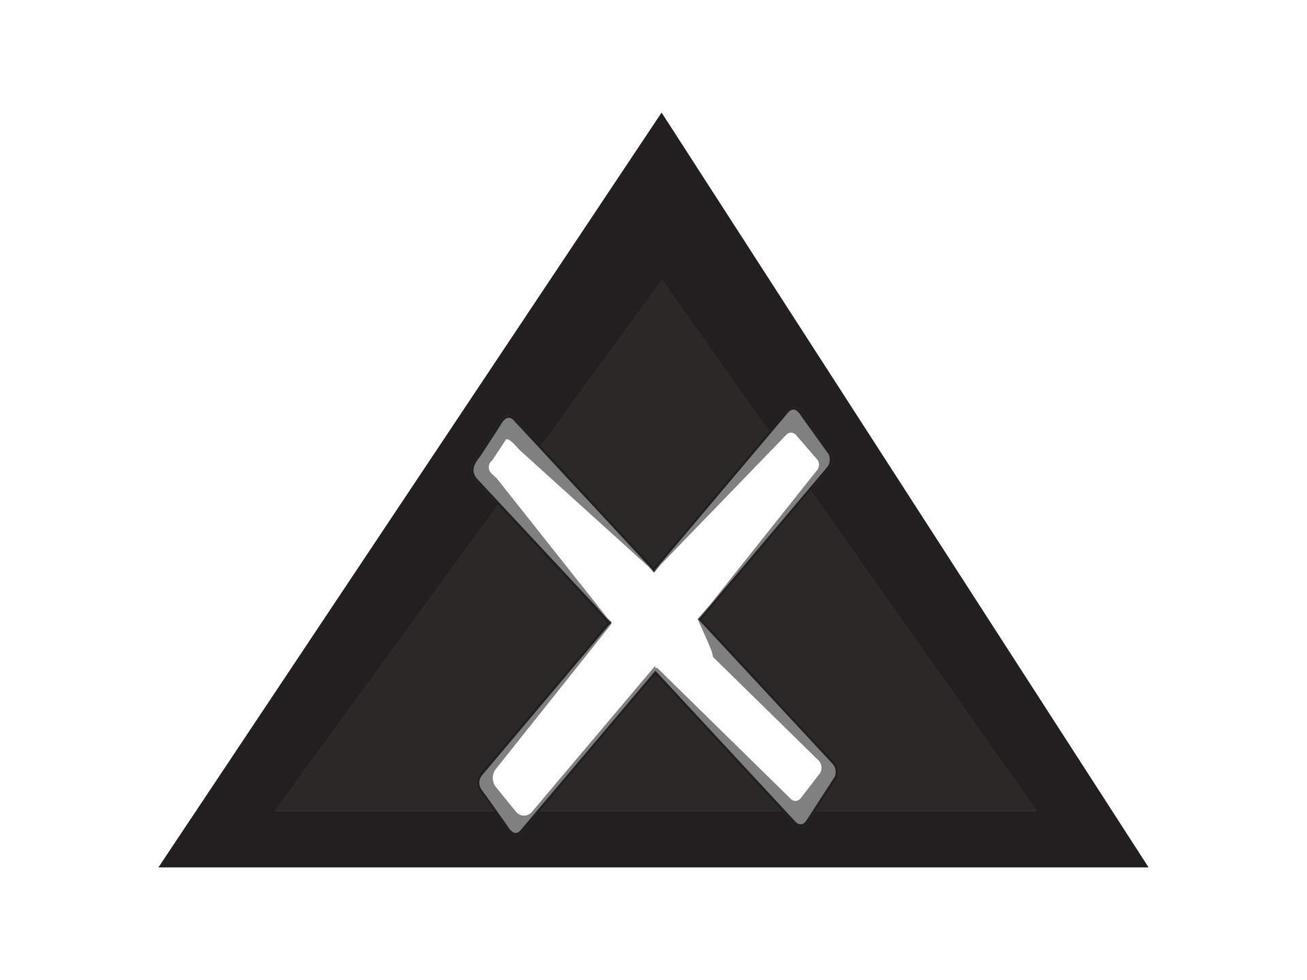 den vita x-symbolen inuti en svart triangel, antingen för att illustrera en fara eller en varning vektor